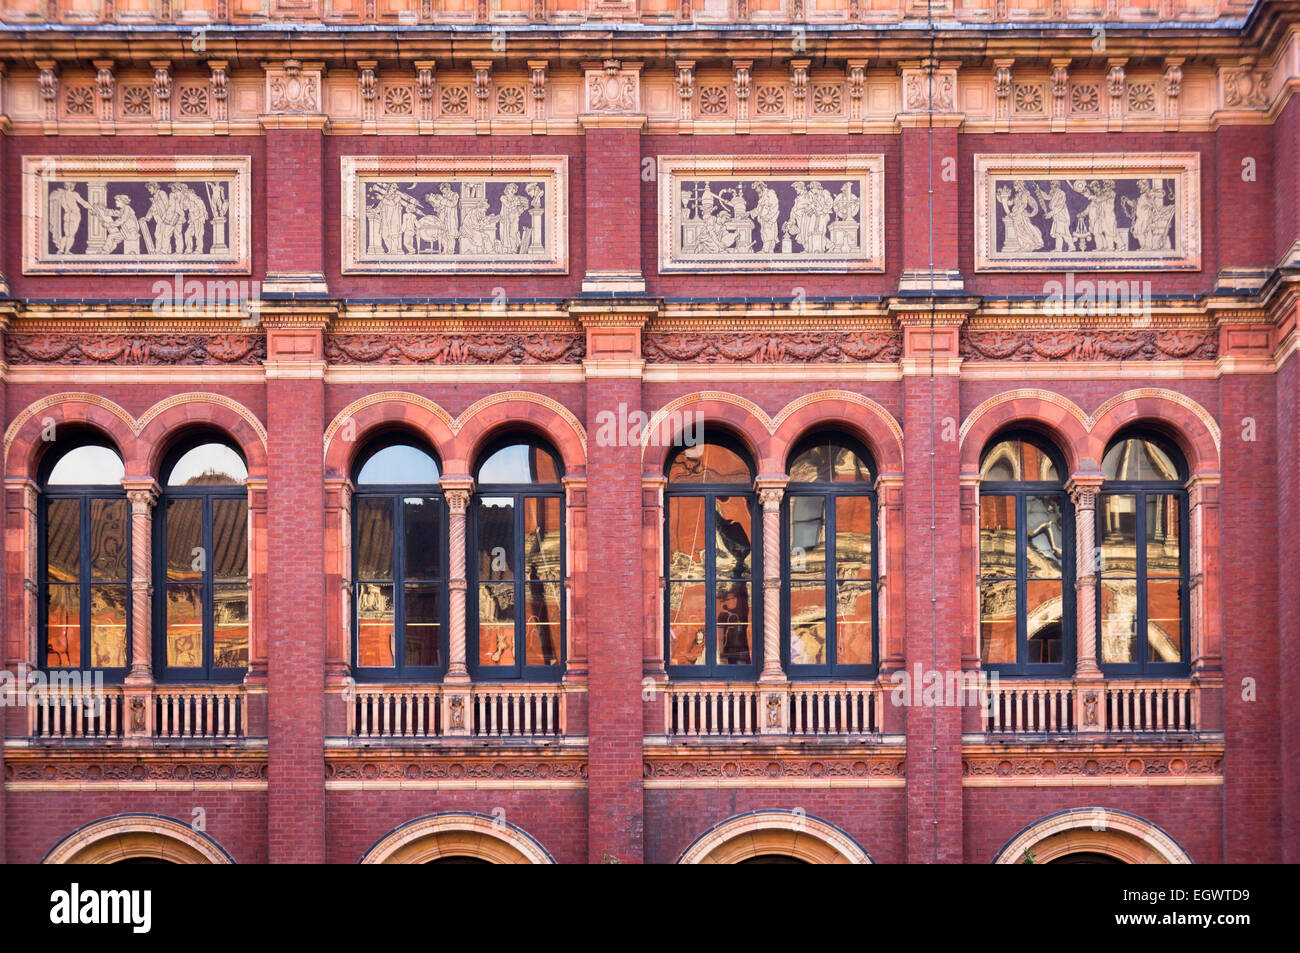 Victoria und Albert Museum, London, England, UK - architektonische Details von der italienischen Renaissance-Gebäude Stockfoto